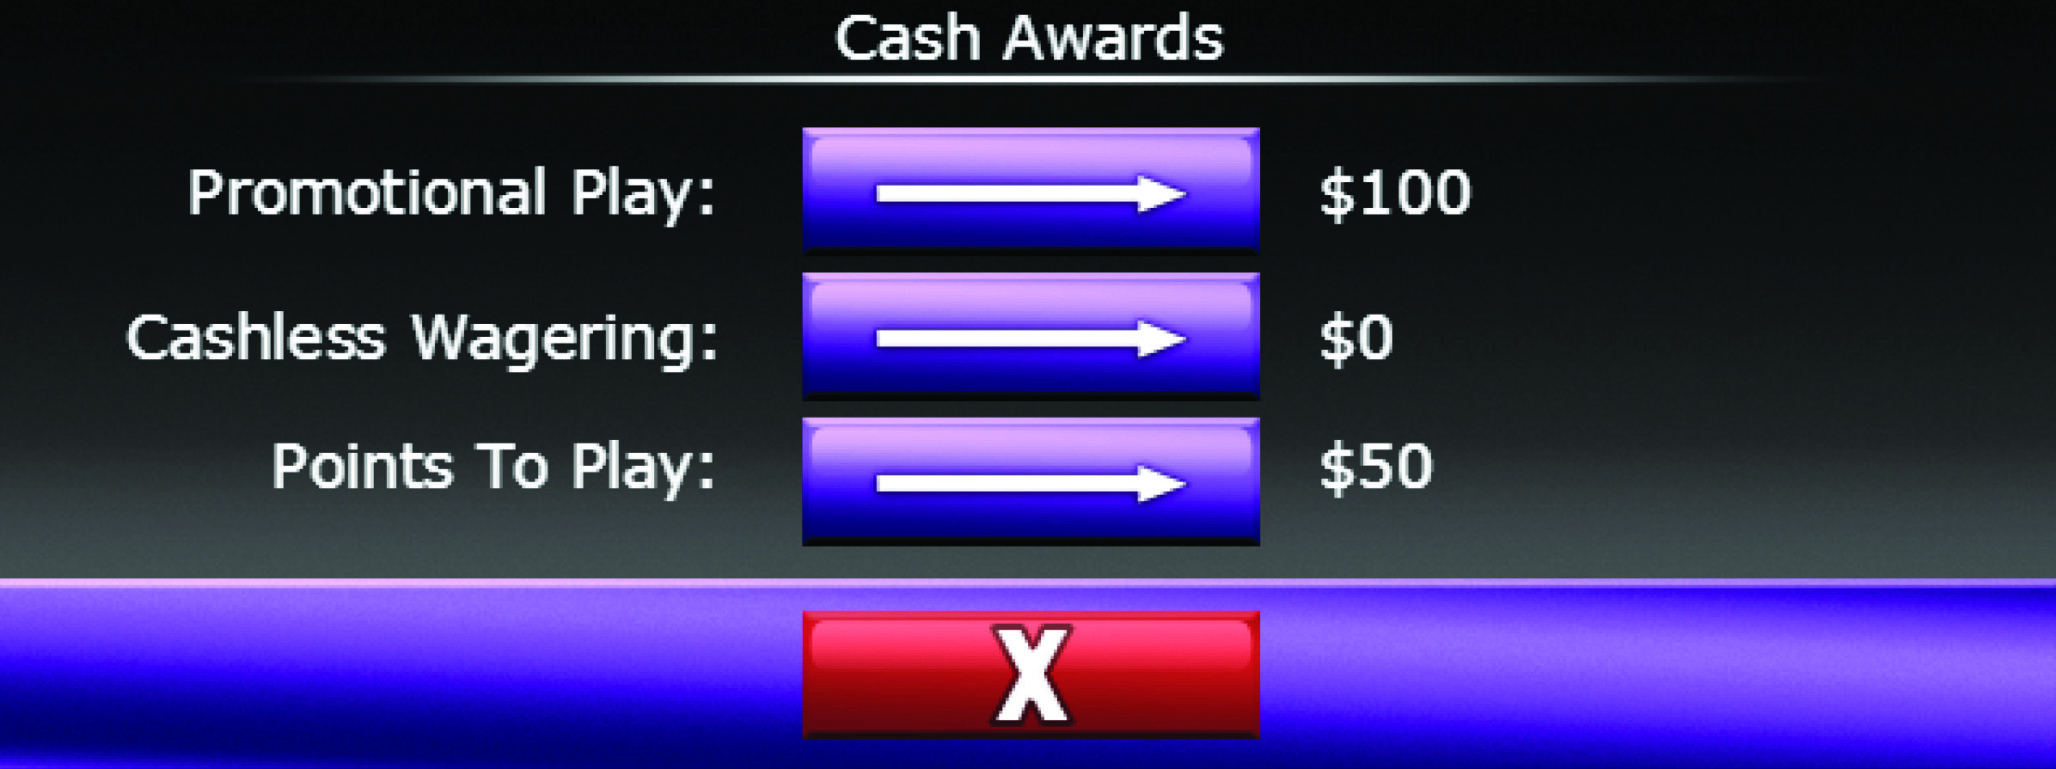 Cash awards screen